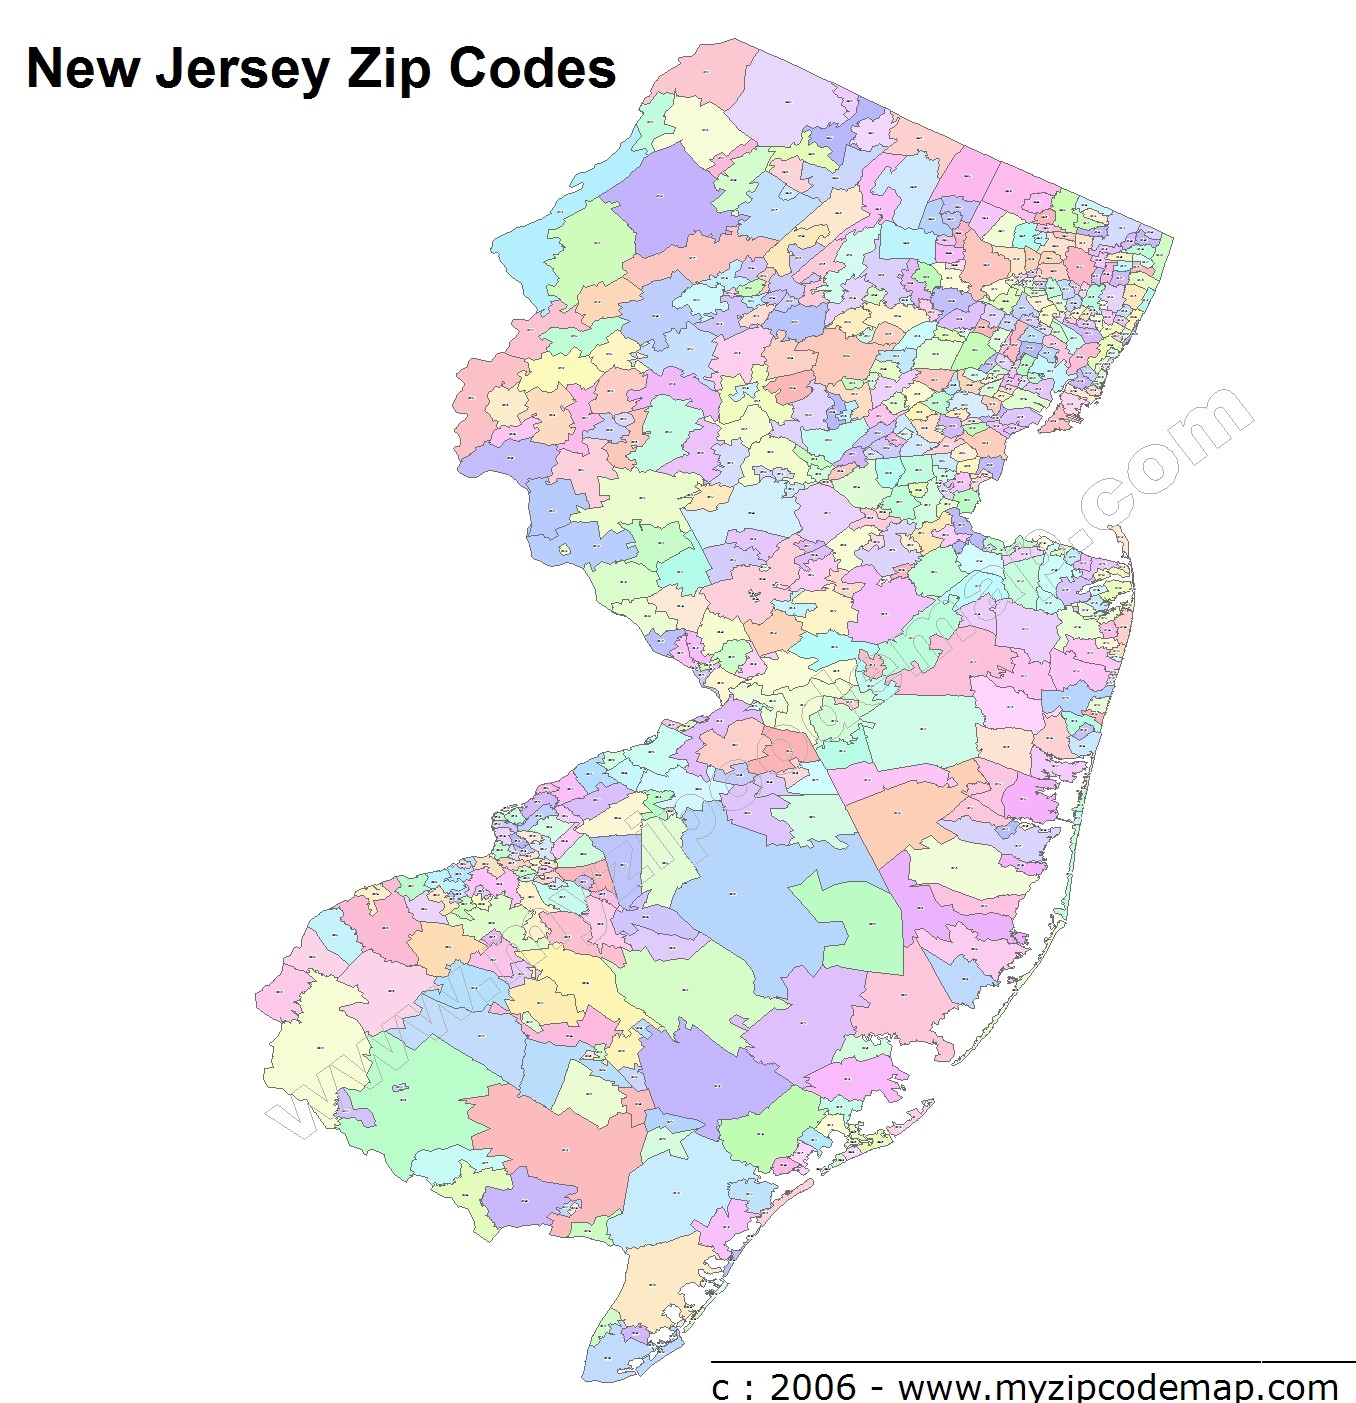 New Jersey (NJ) Zip Code Map